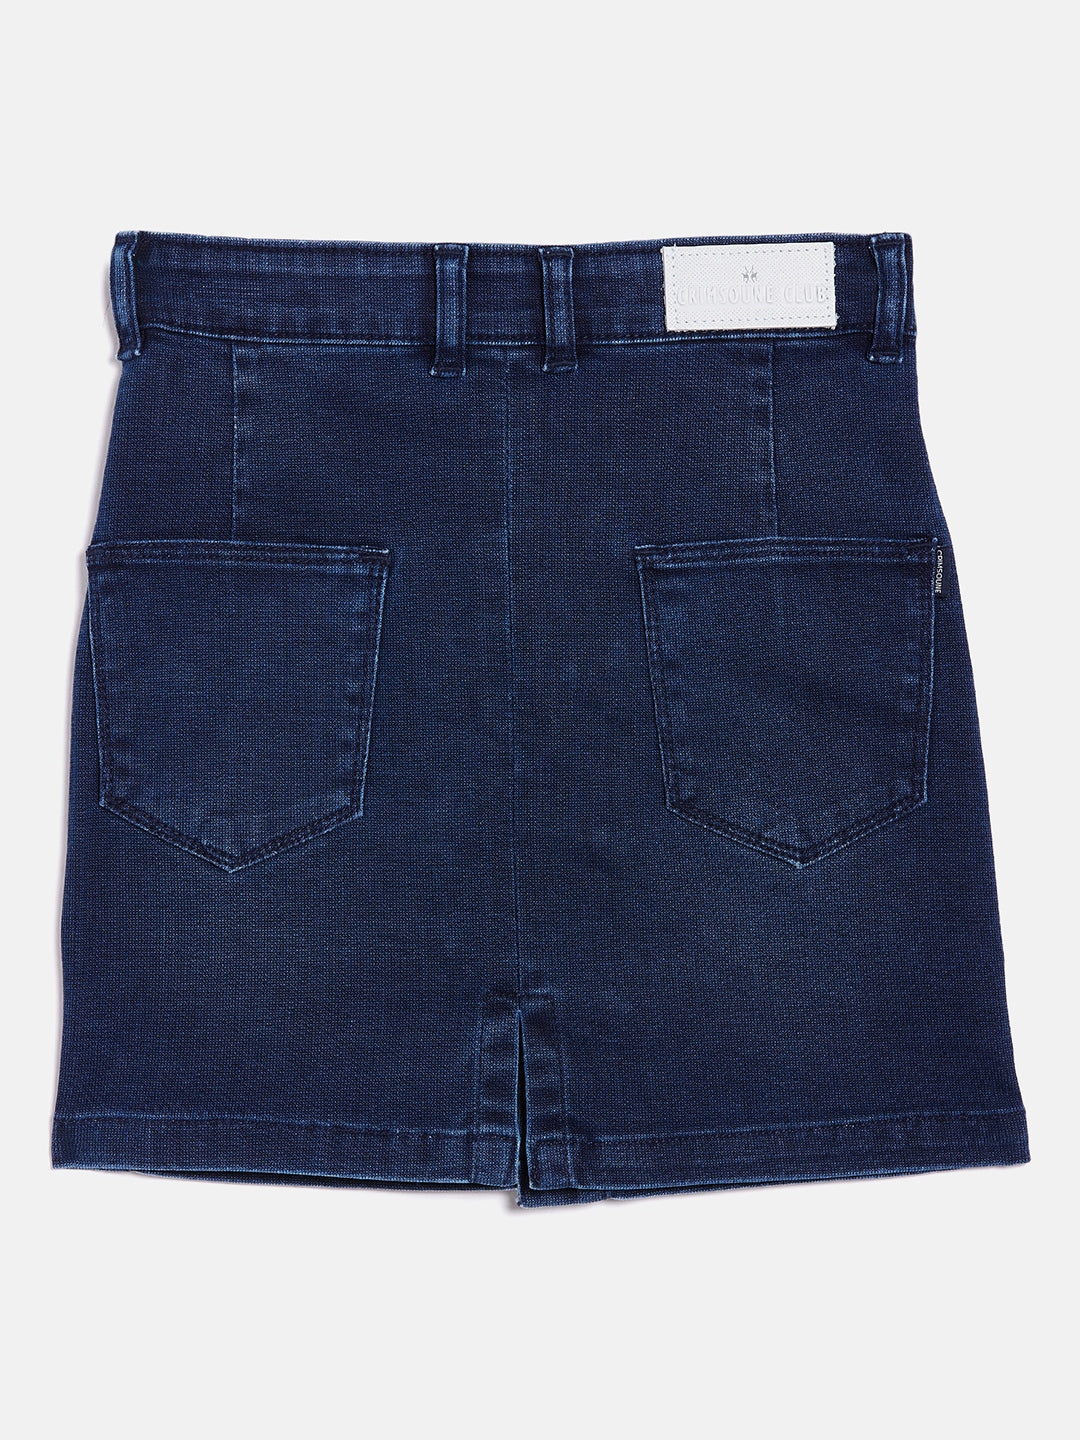 Blue Denim Skirt - Girls Skirts